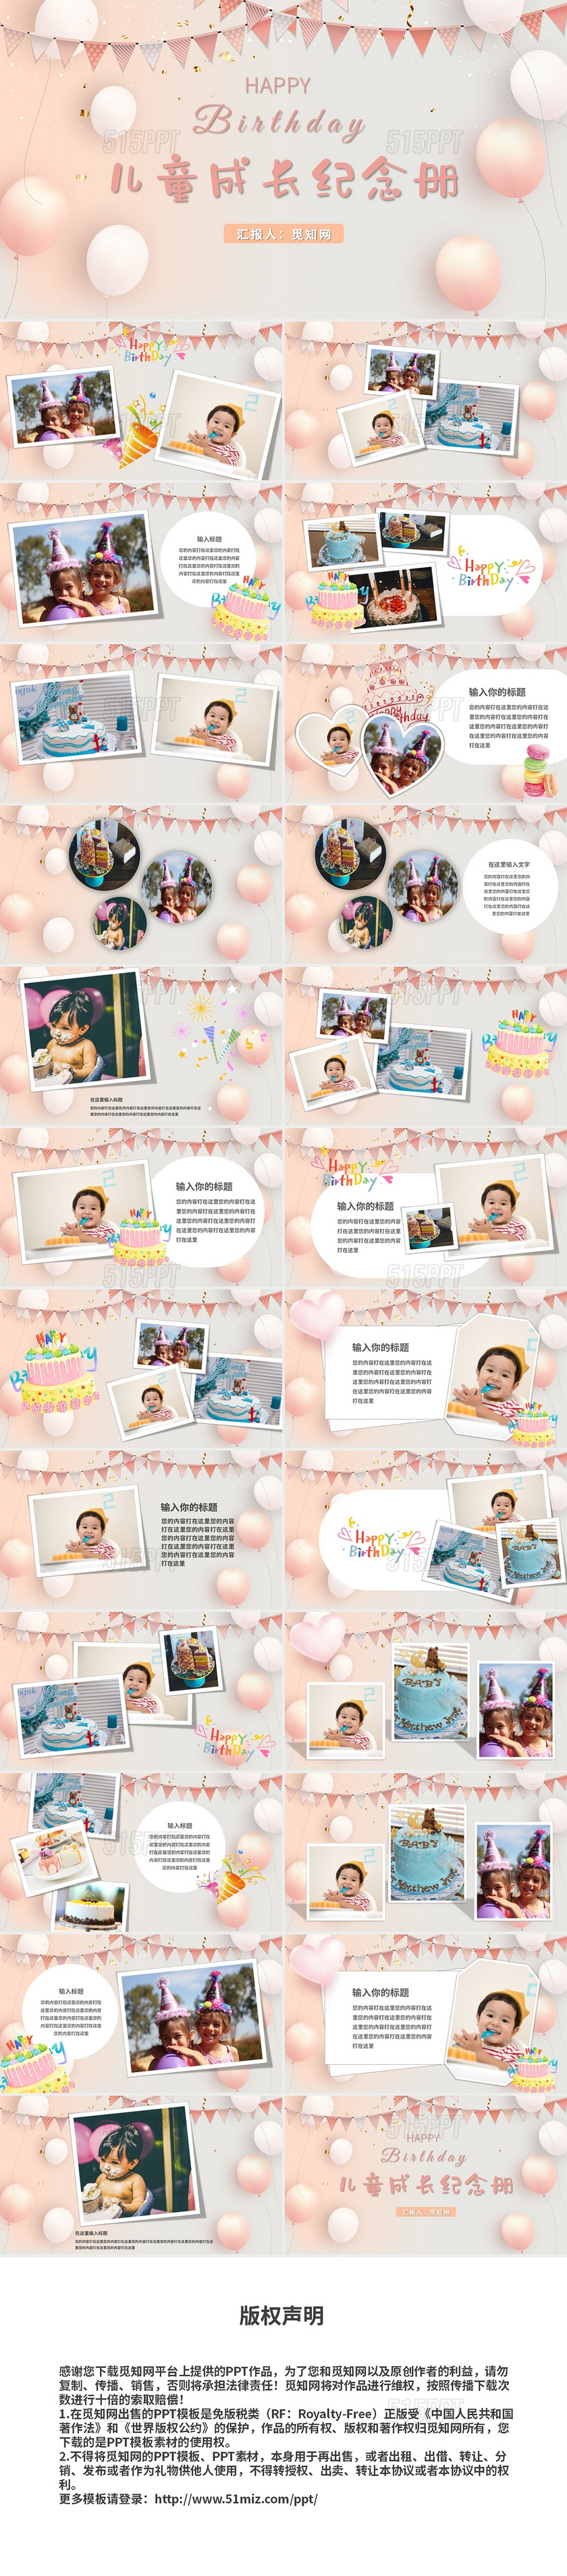 粉色气球生日快乐儿童成长纪念册PPT模板